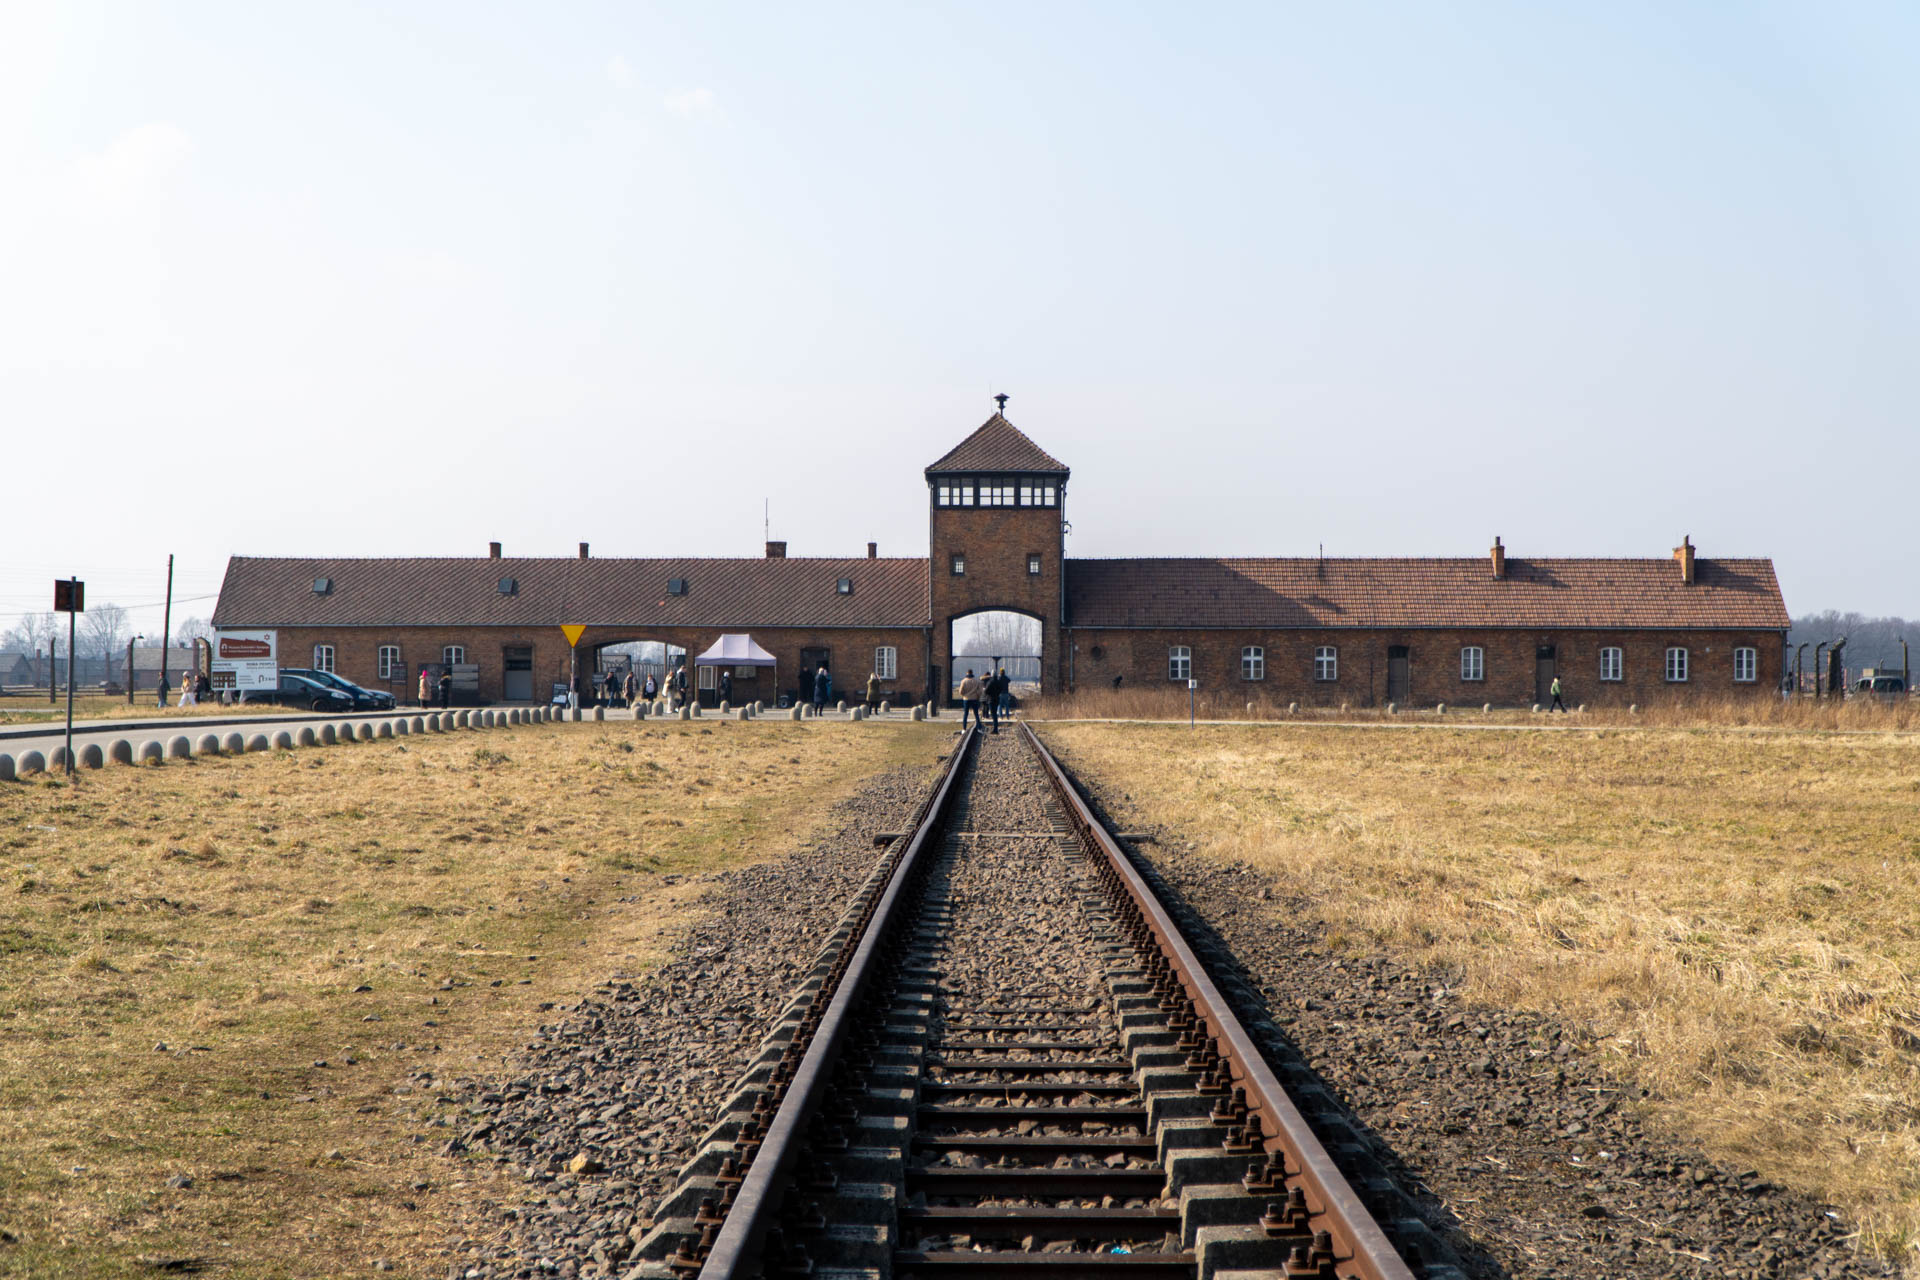 Campo de Concentração Auschwitz Birkenau